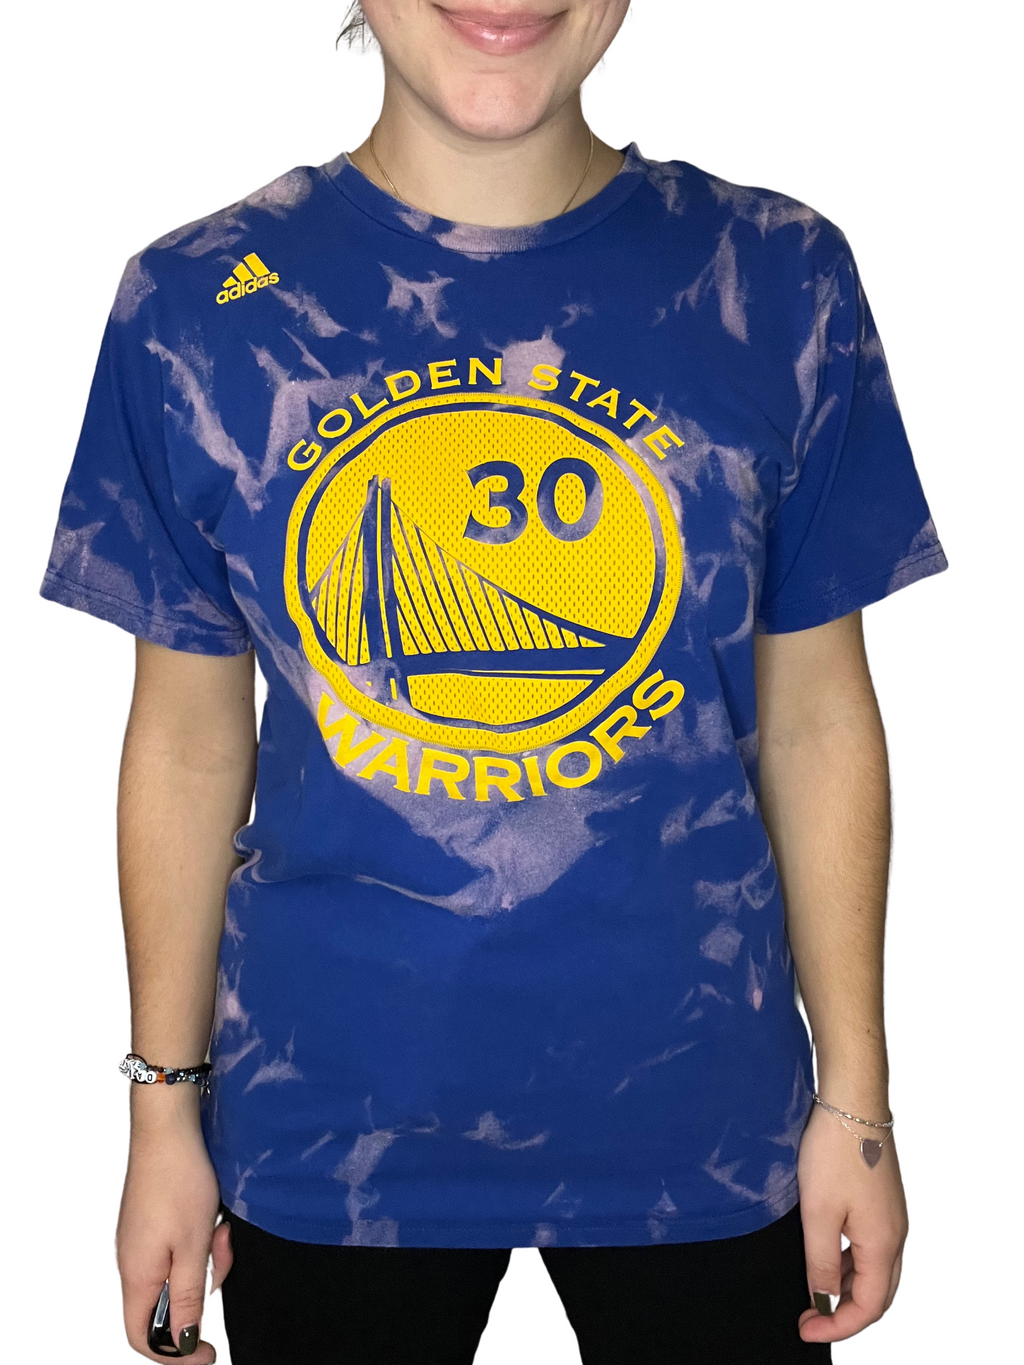 Golden State Warriors Bleached Shirt